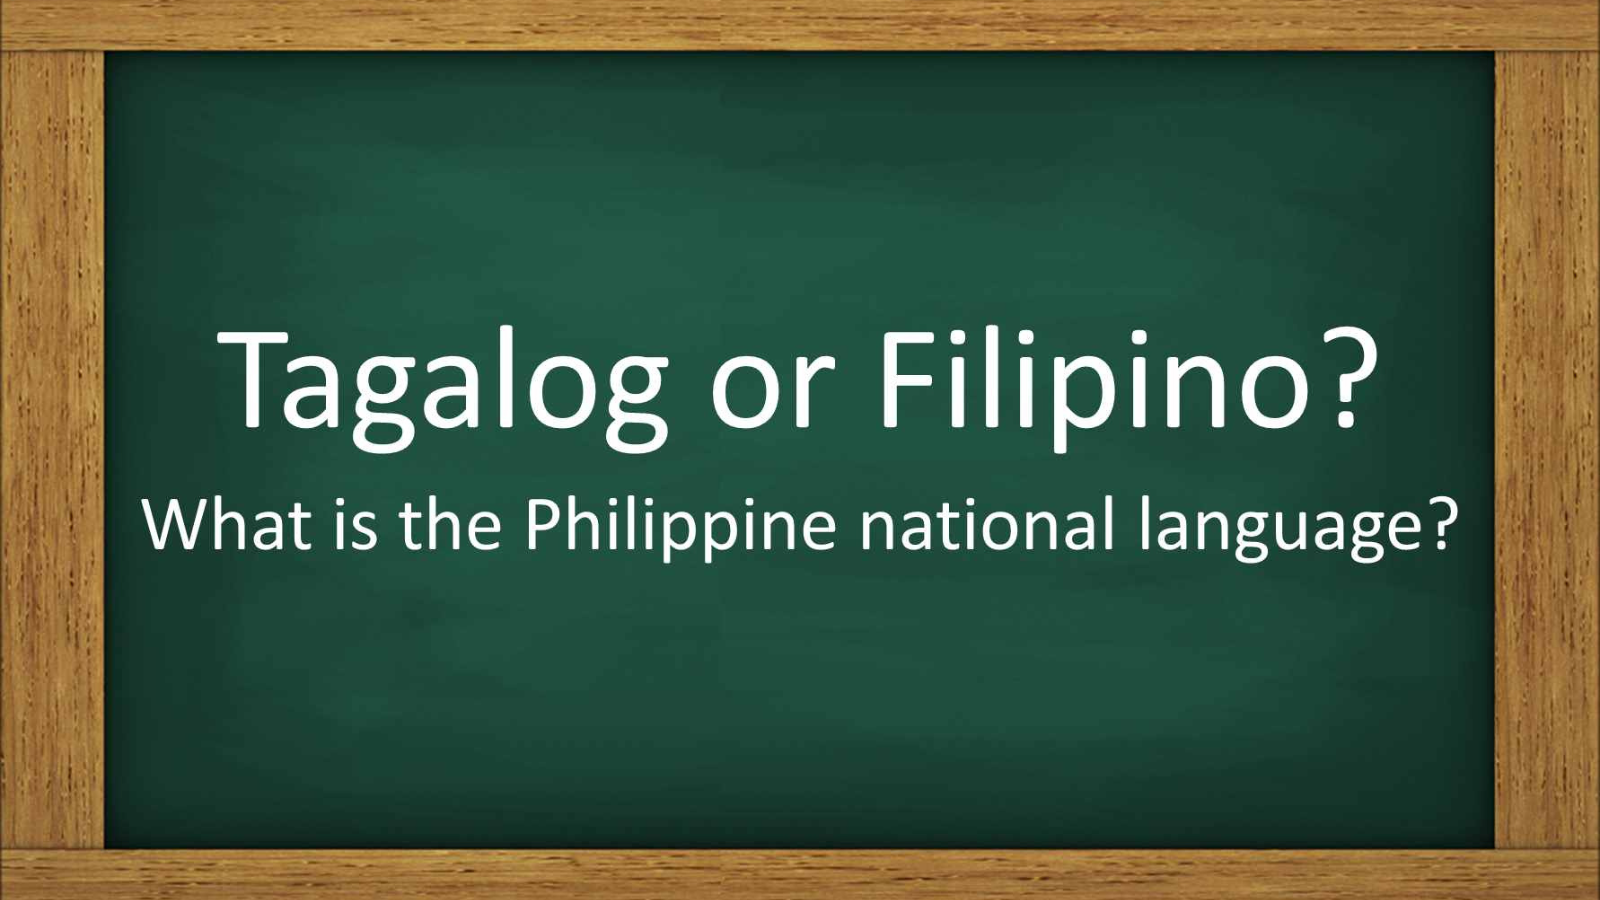 tagalog merupakan bahasa resmi negara